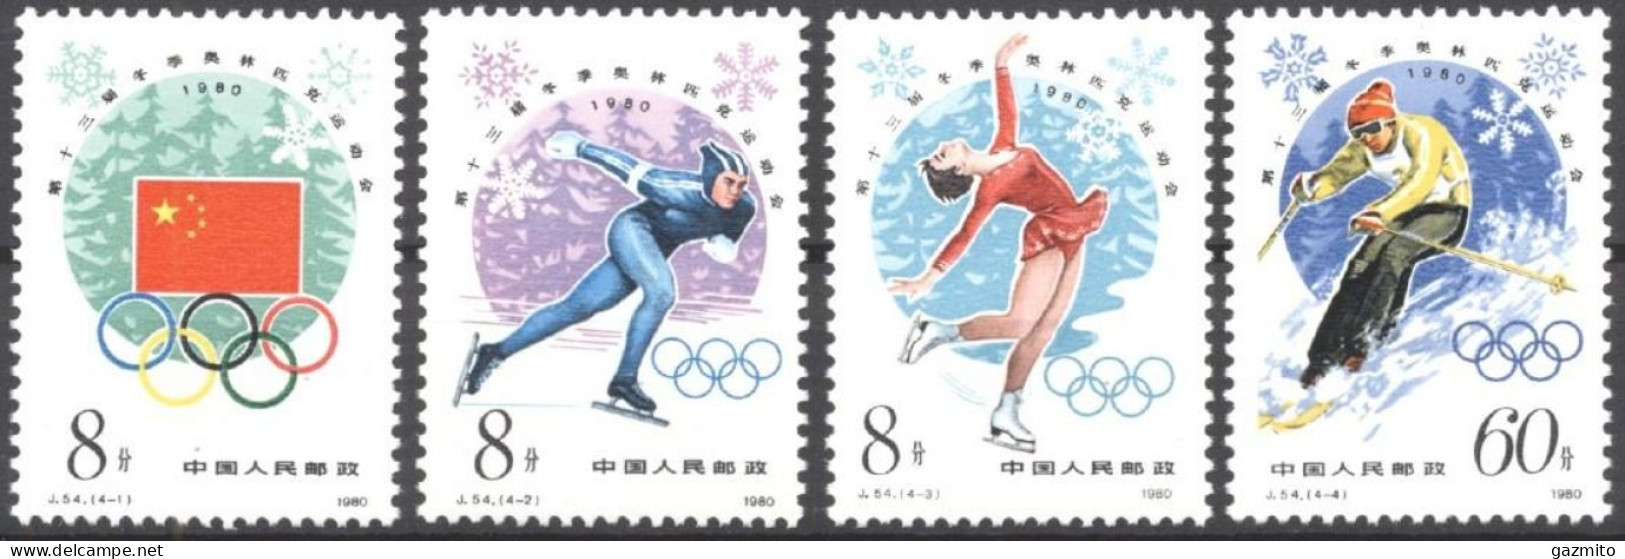 China 1980, Winter Olympic Games, Lake Placid, Skating, Skiing, 4val - Invierno 1980: Lake Placid